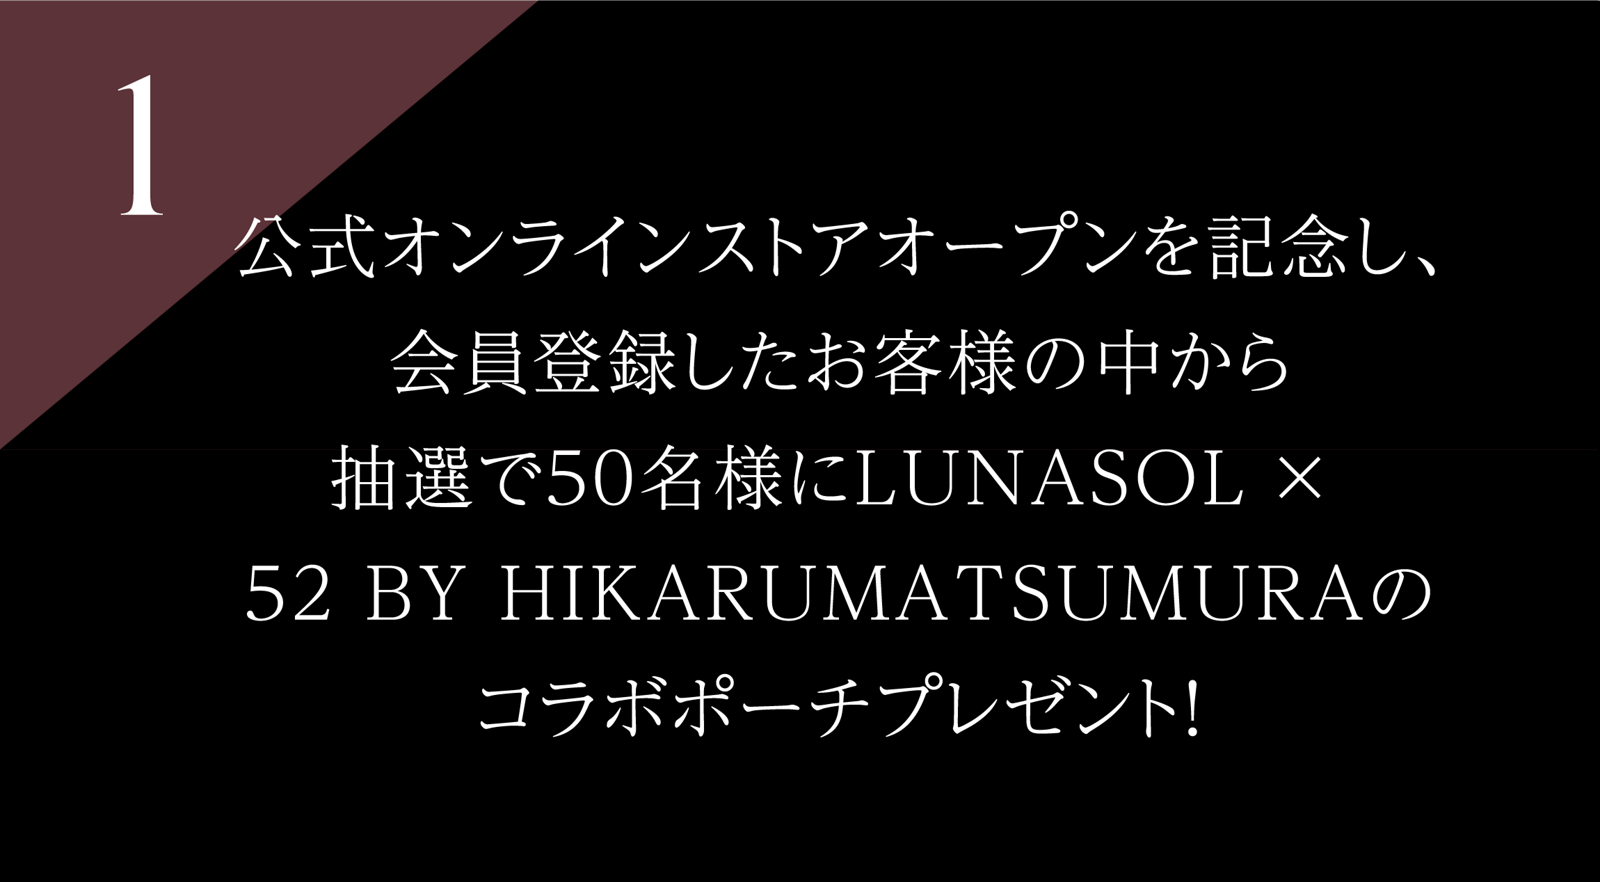 1 公式オンラインストアオープンを記念し、会員登録したお客様の中から 抽選で50名様に LUNASOL × 52 BY HIKARUMATSUMURAのコラボポーチプレゼント!